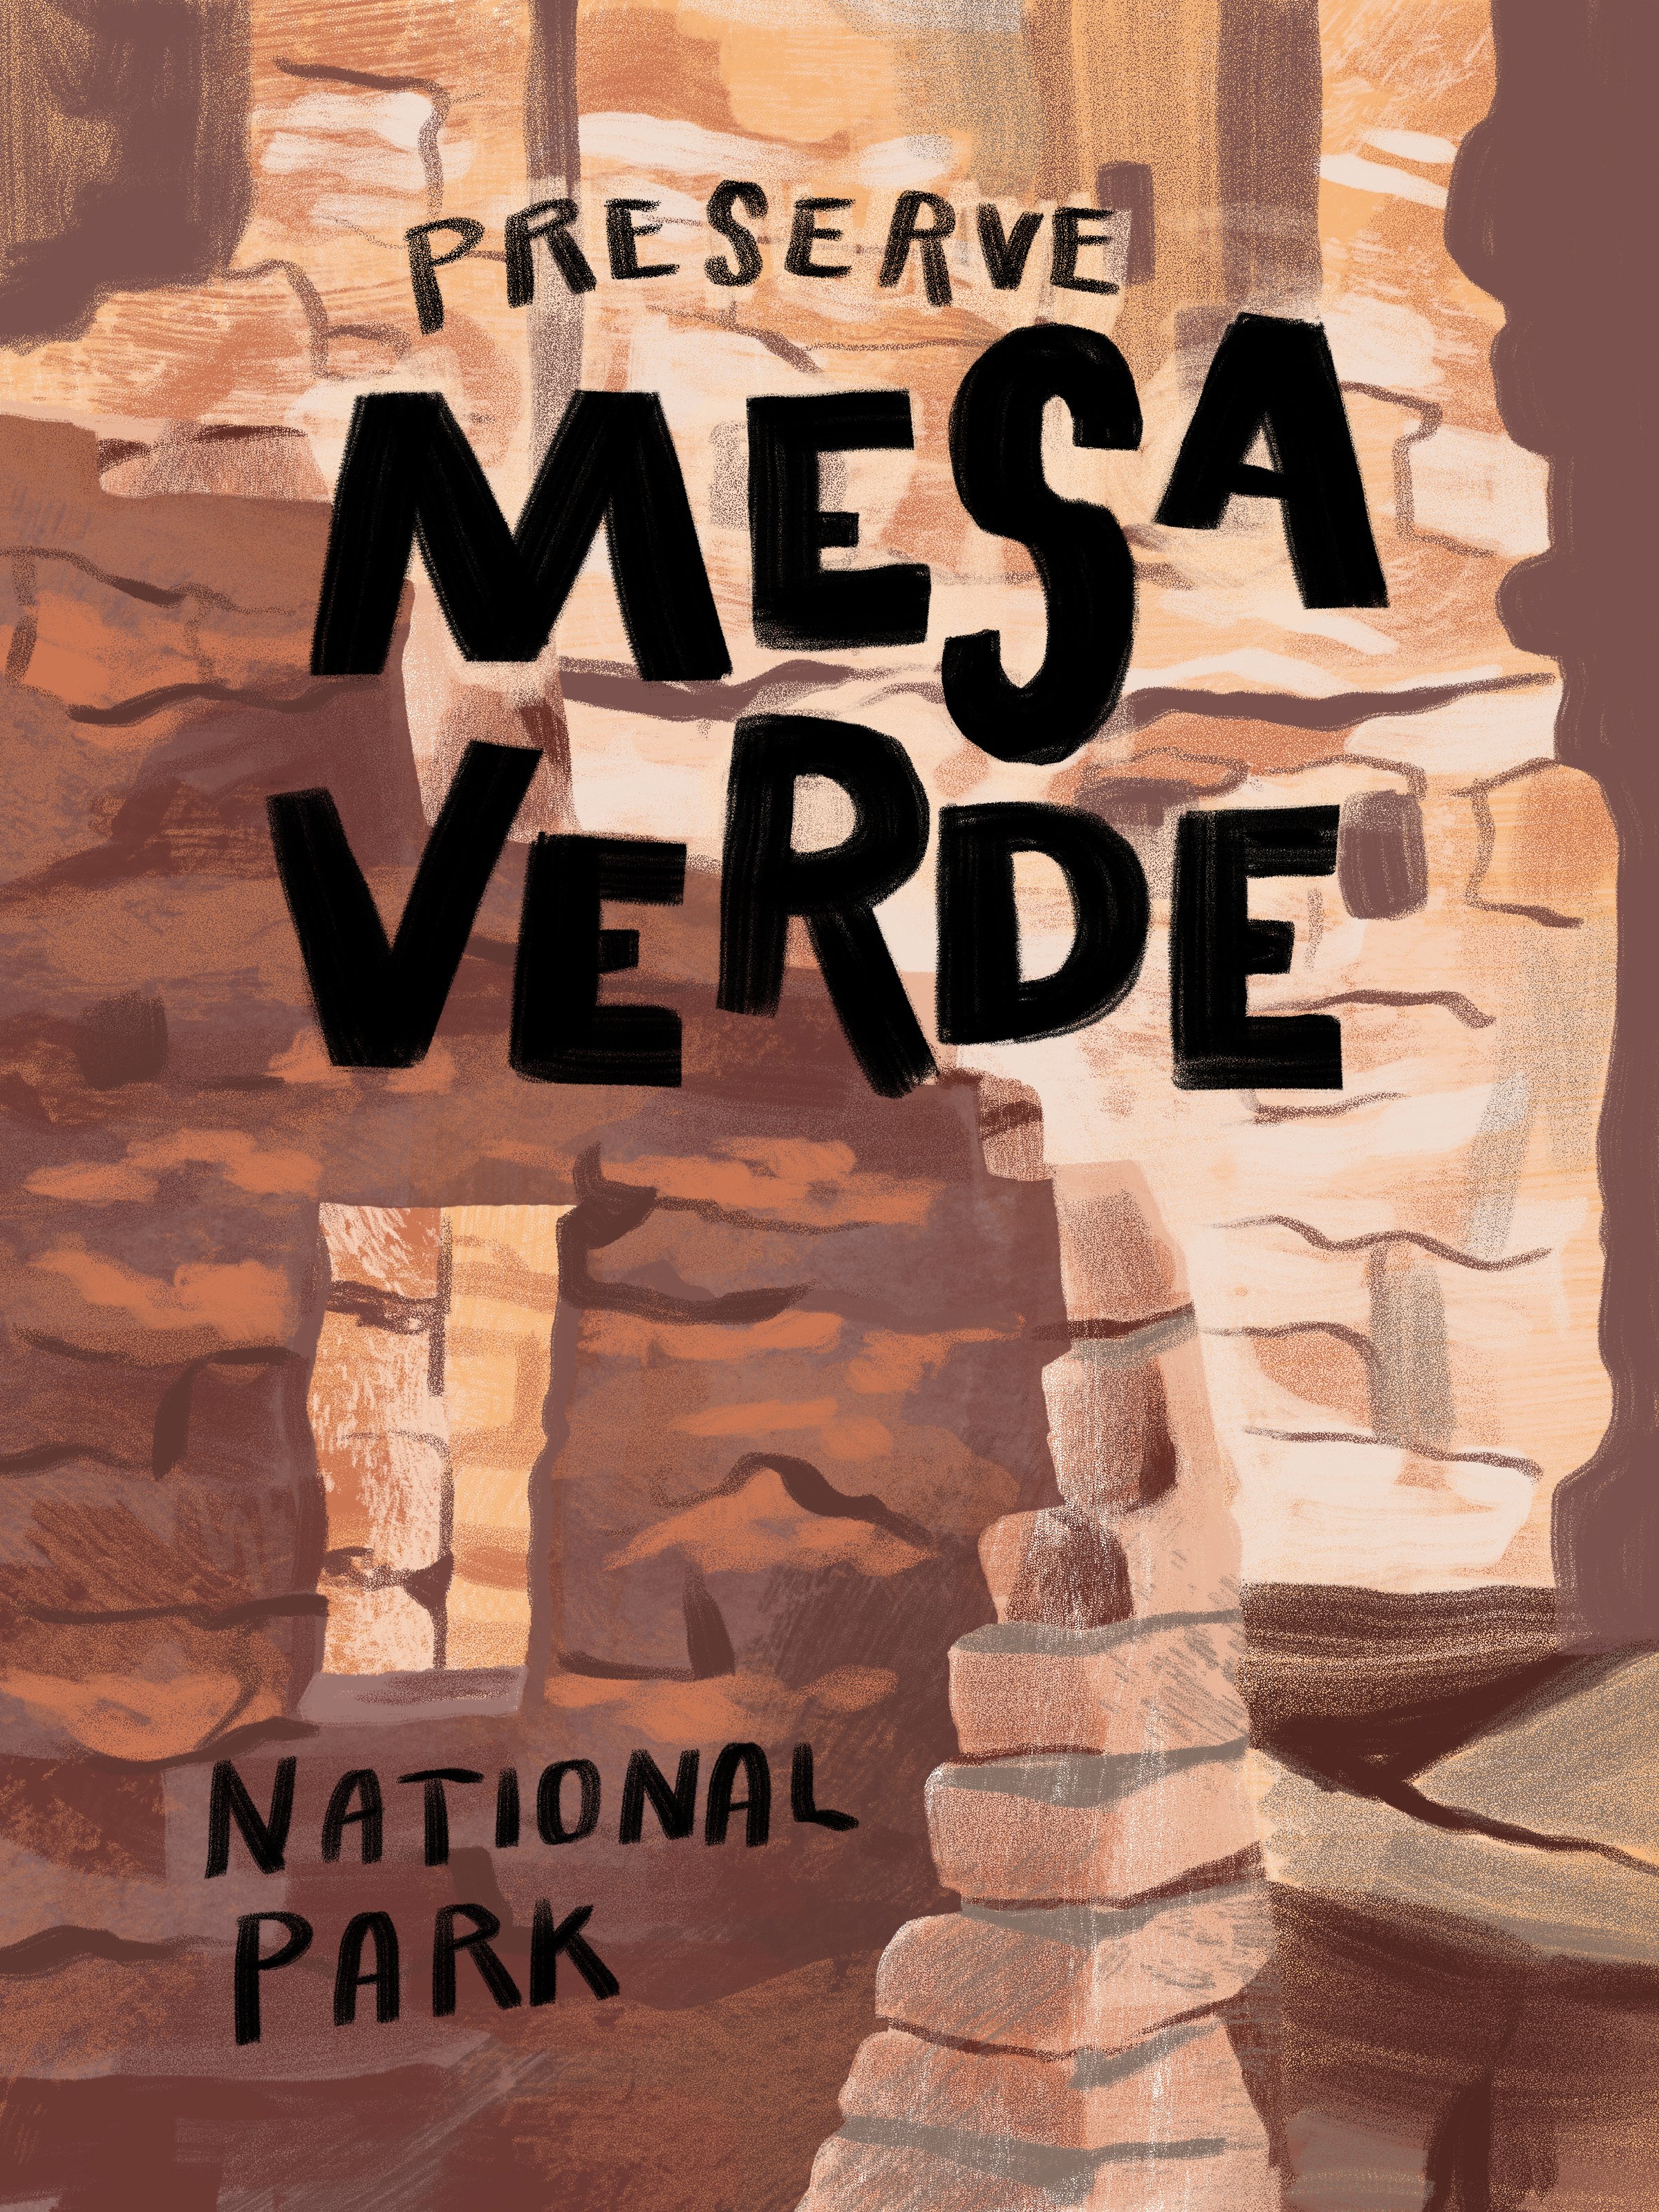 Western Road Trip Stickers-Mesa Verde.jpg